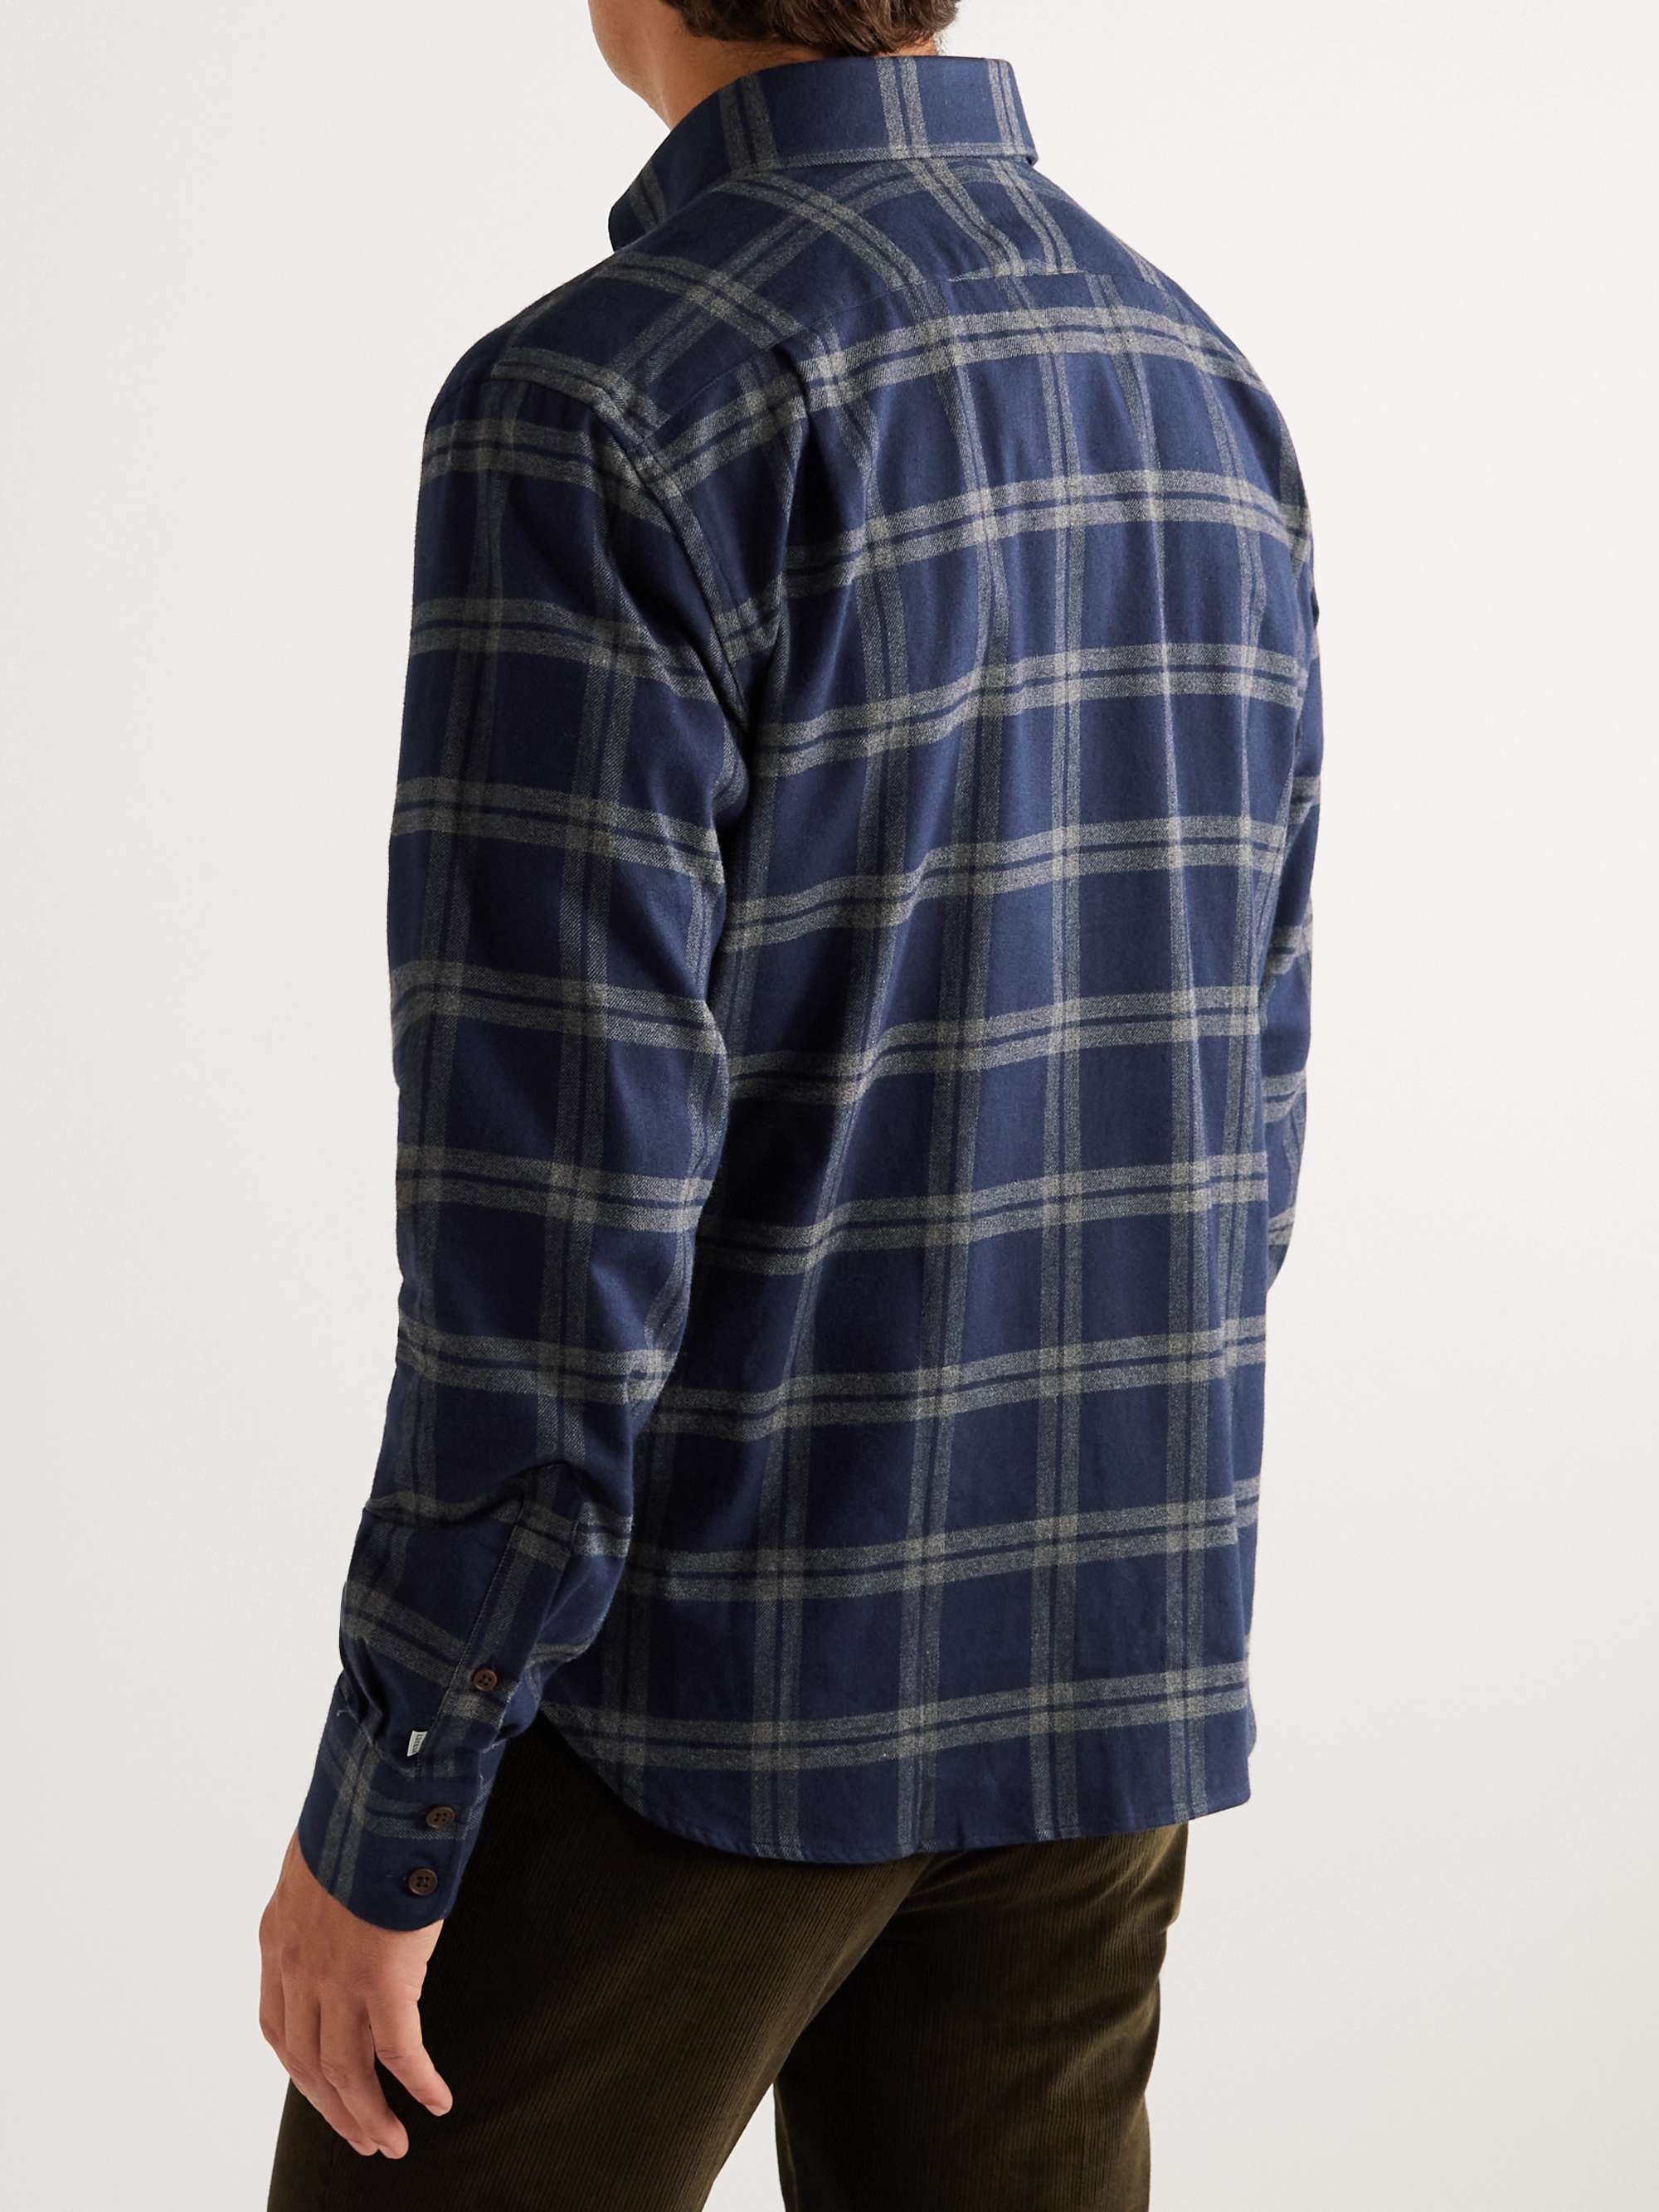 JAMESPURDEYANDSONS Button-Down Collar Checked Cotton-Flannel Shirt